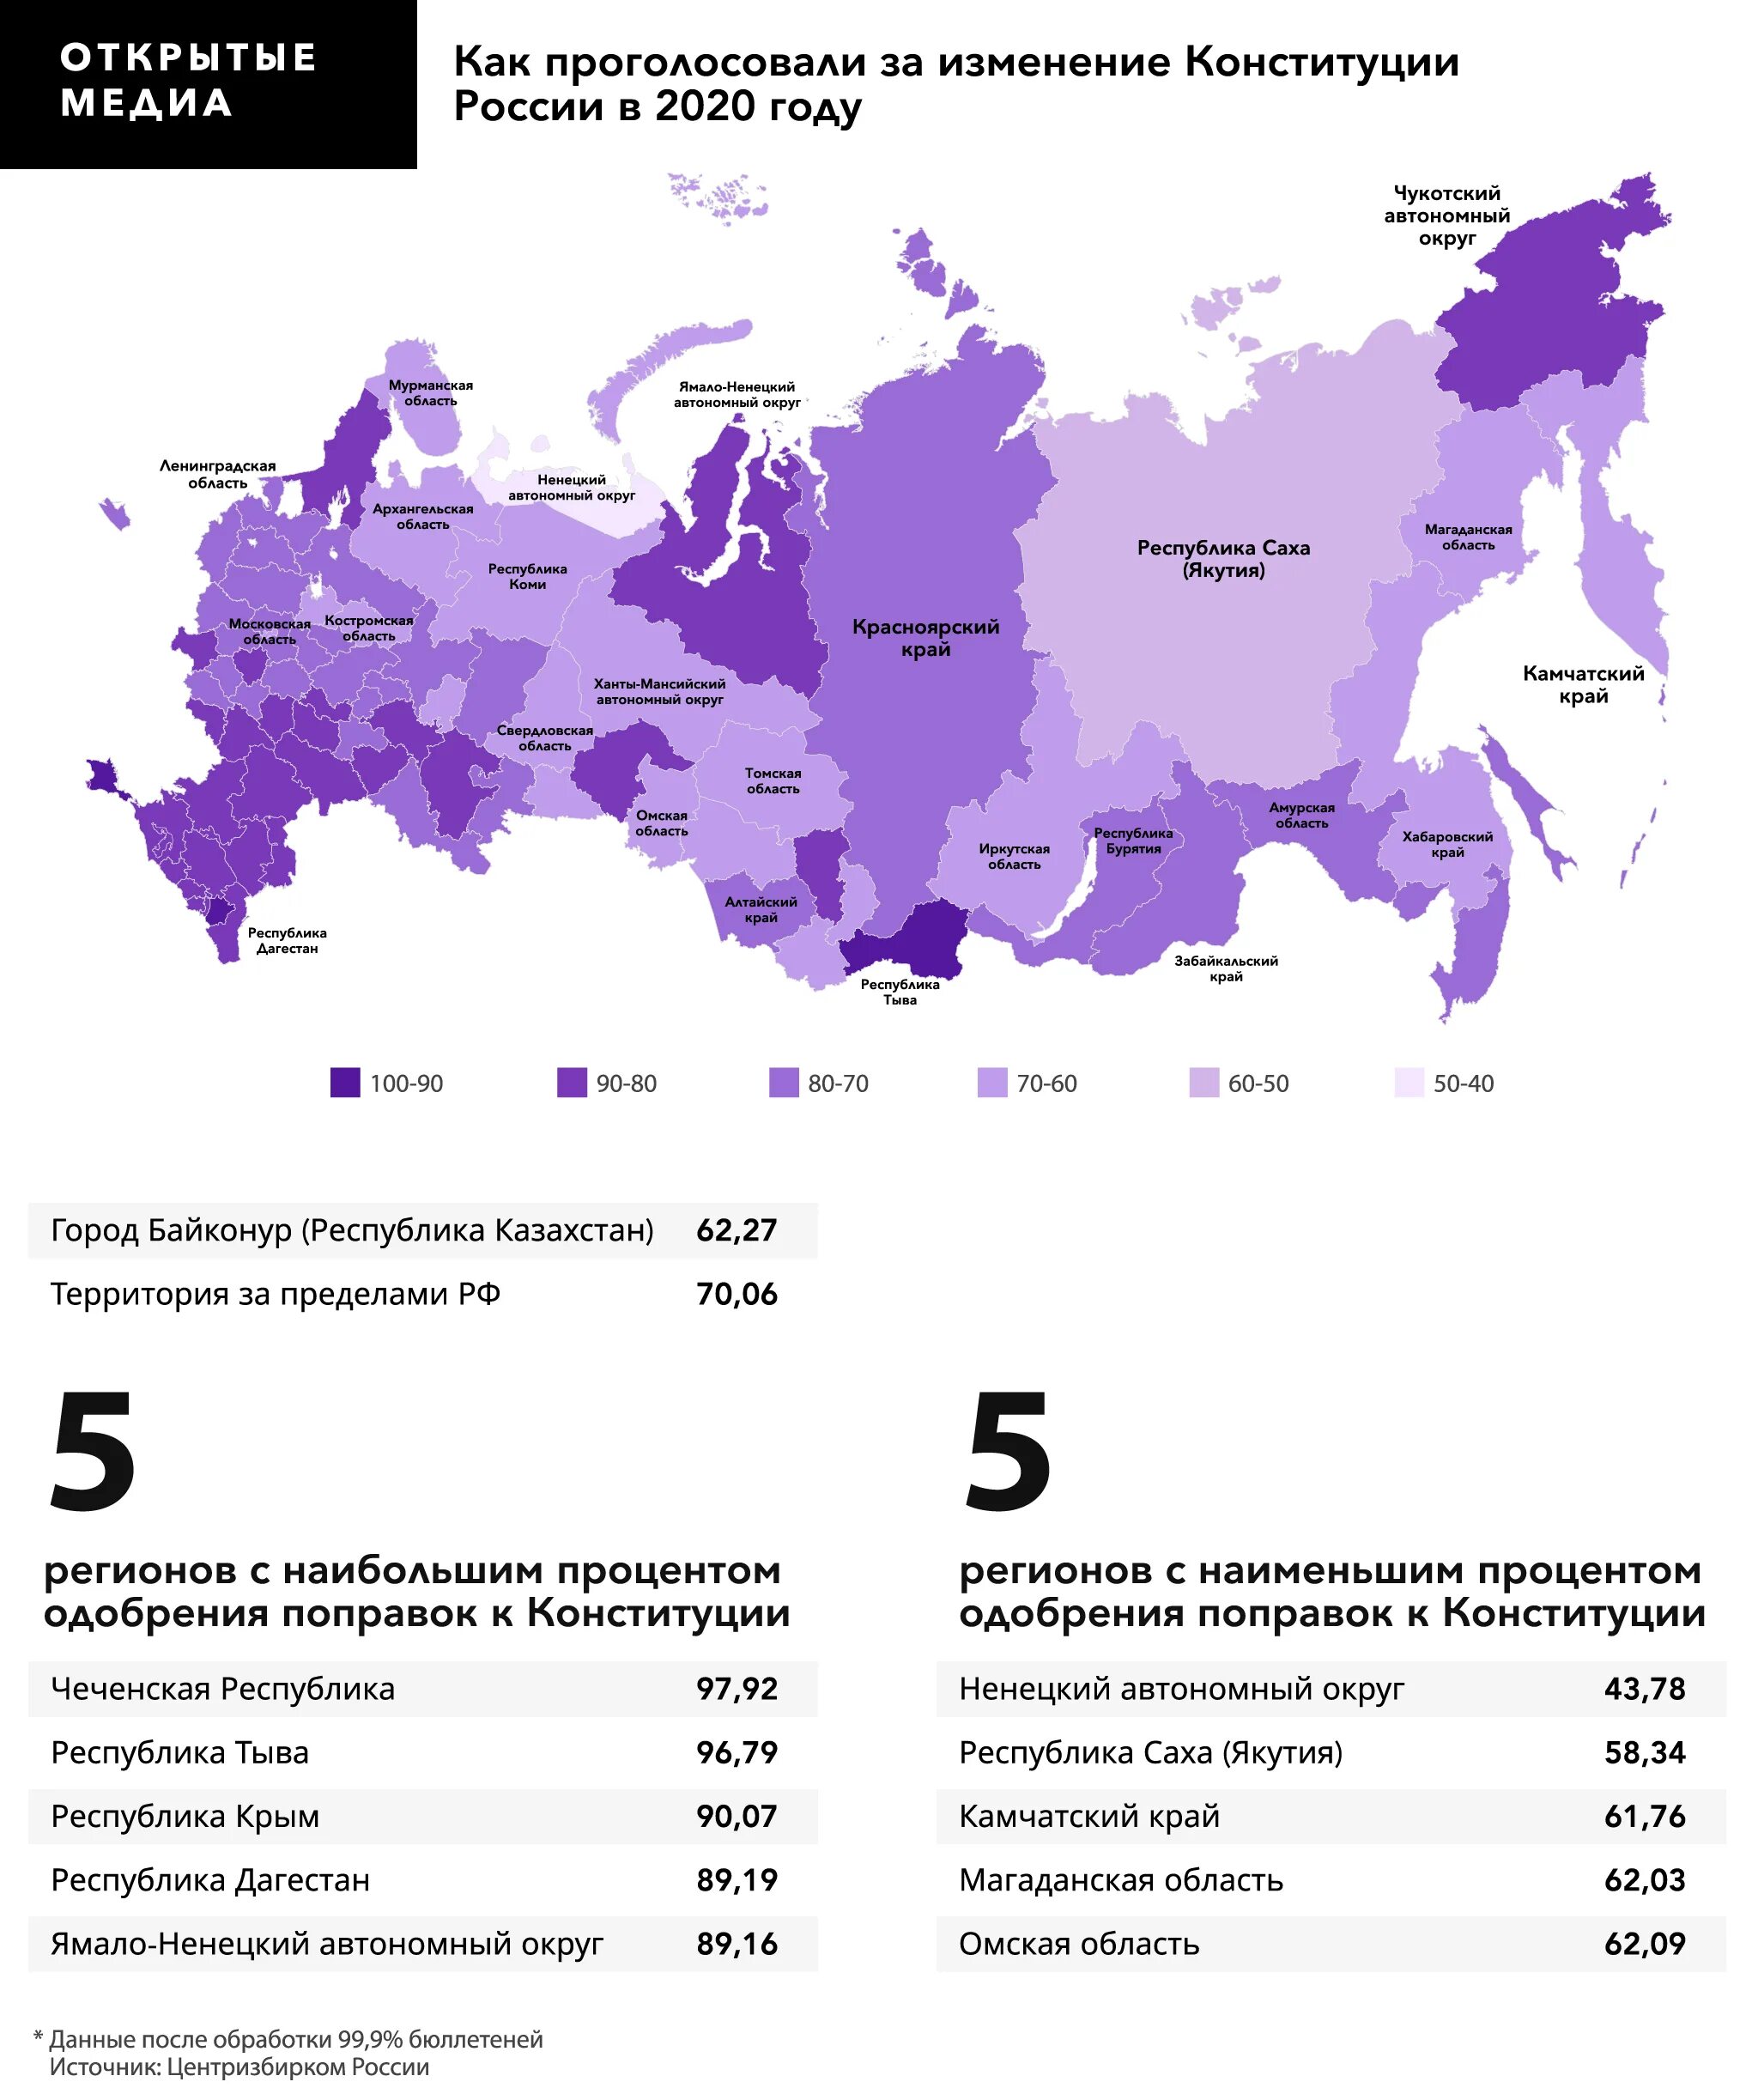 Проценты по регионам. Ujkjcjdfybt GJ htubjufv]. Статистика голосования по регионам. Голосование по регионамонам. Голосование за Путина по регионам.